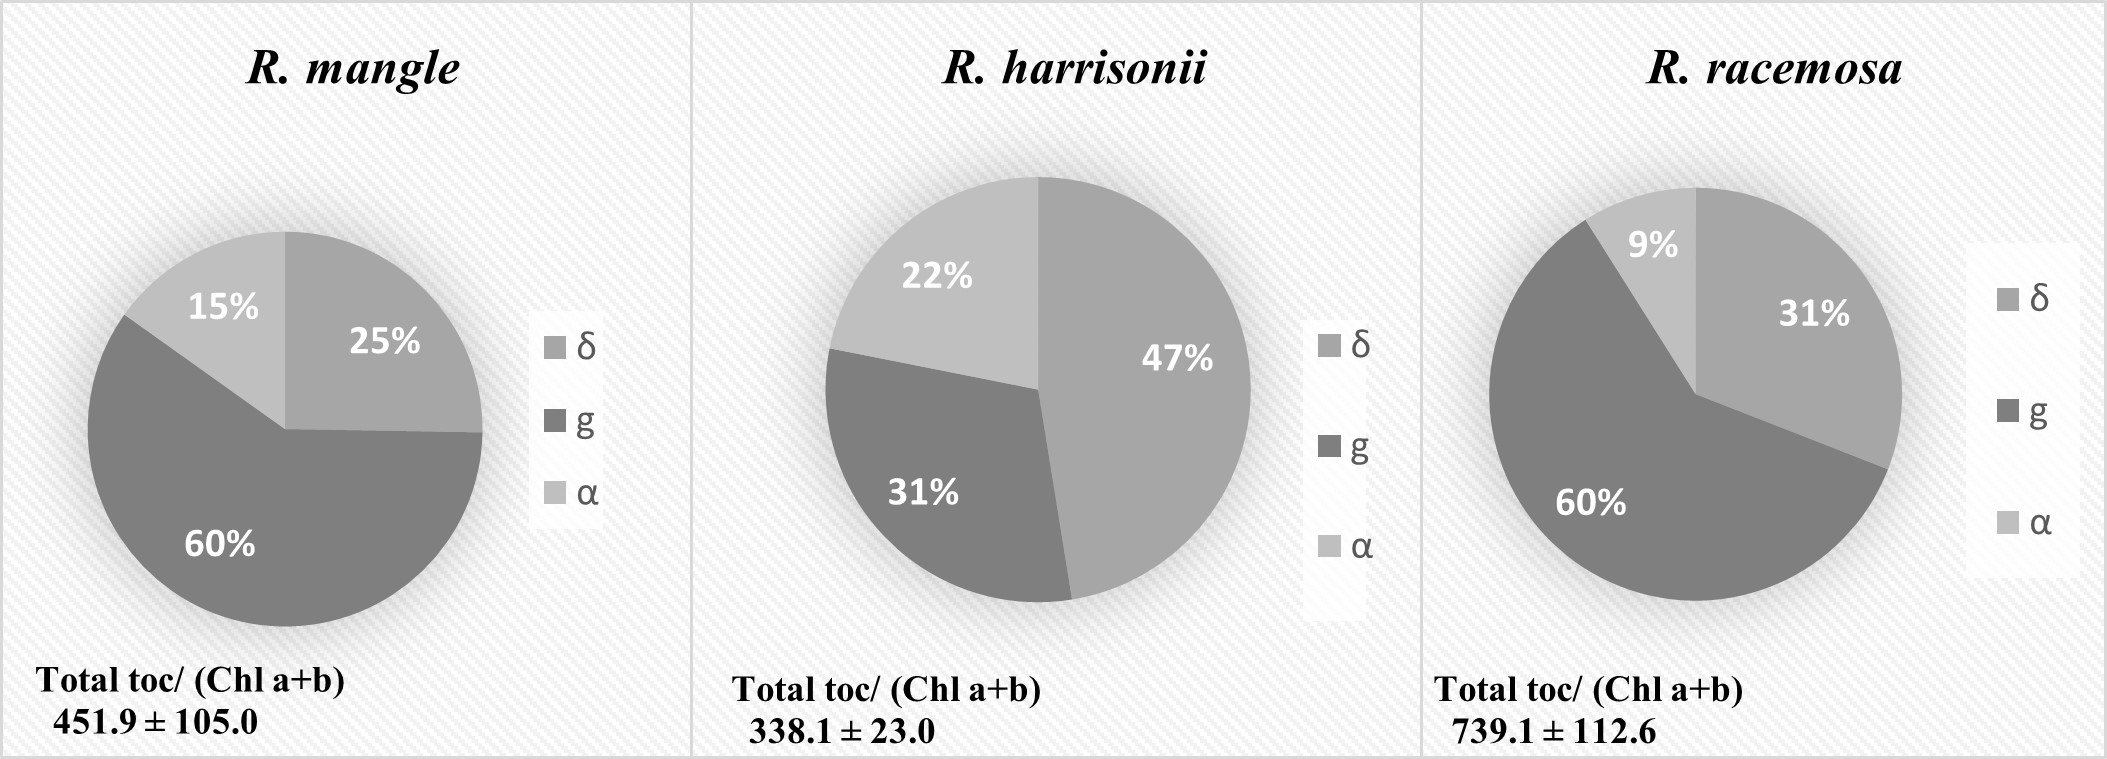 Contenido total (mmol mol
Chl-1) y composición de tocoferoles (δ,g,α) en hojas para las
especies R. mangle, R. harrisonii y R.
racemosa. Se muestran valores medios ± ES. (n=5).